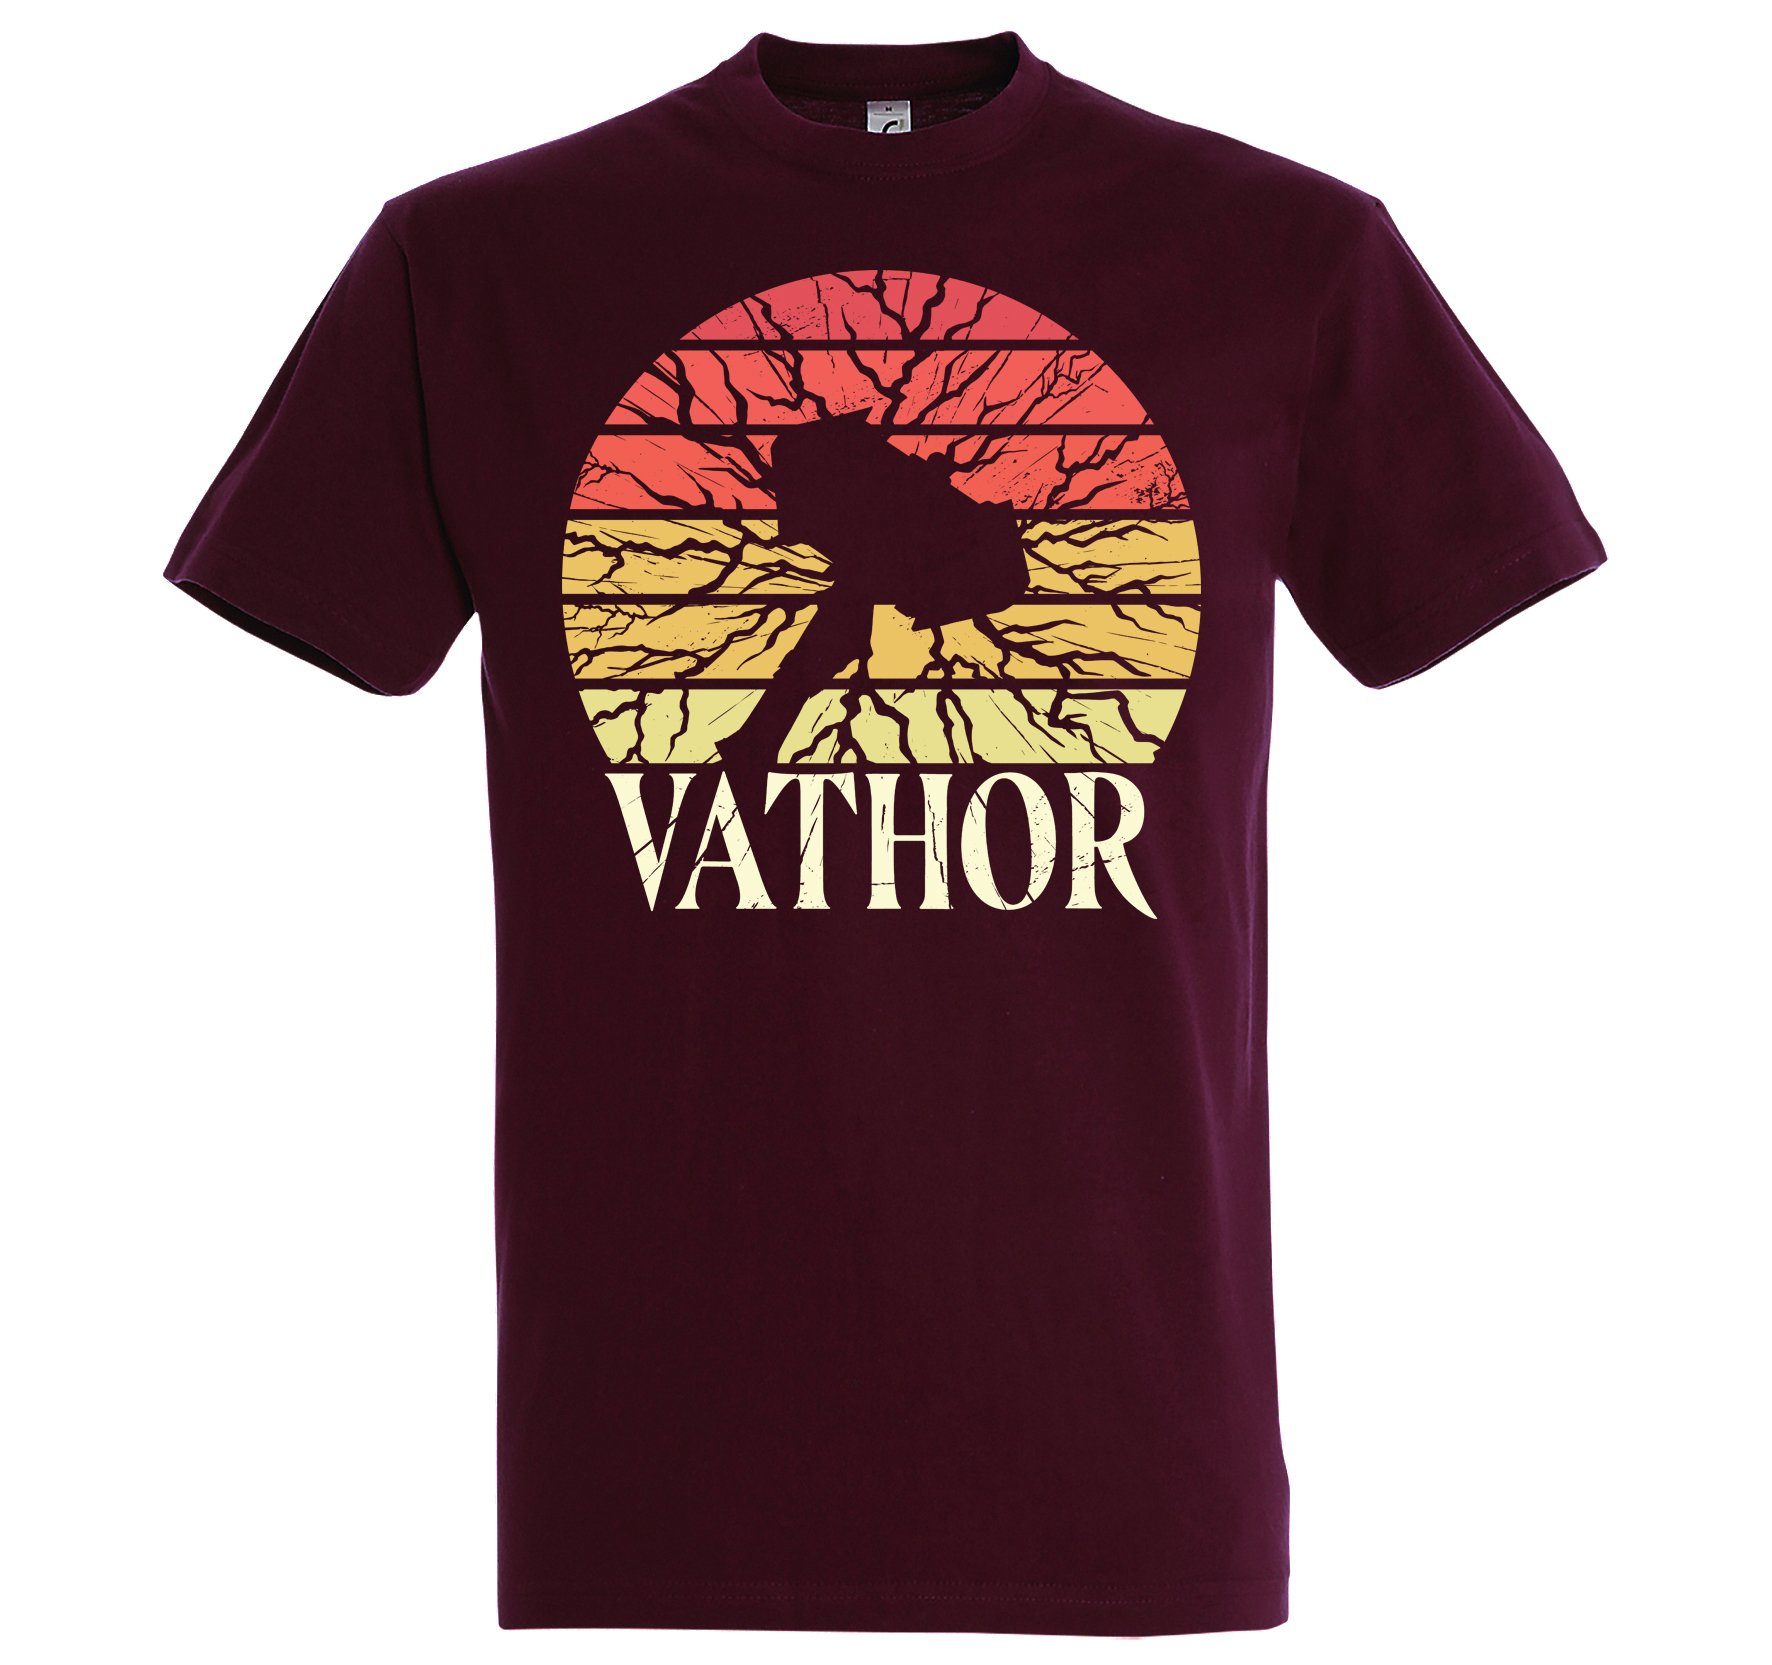 T-Shirt Trendigem Burgund Designz Herren Frontdruck mit Vathor T-Shirt Youth